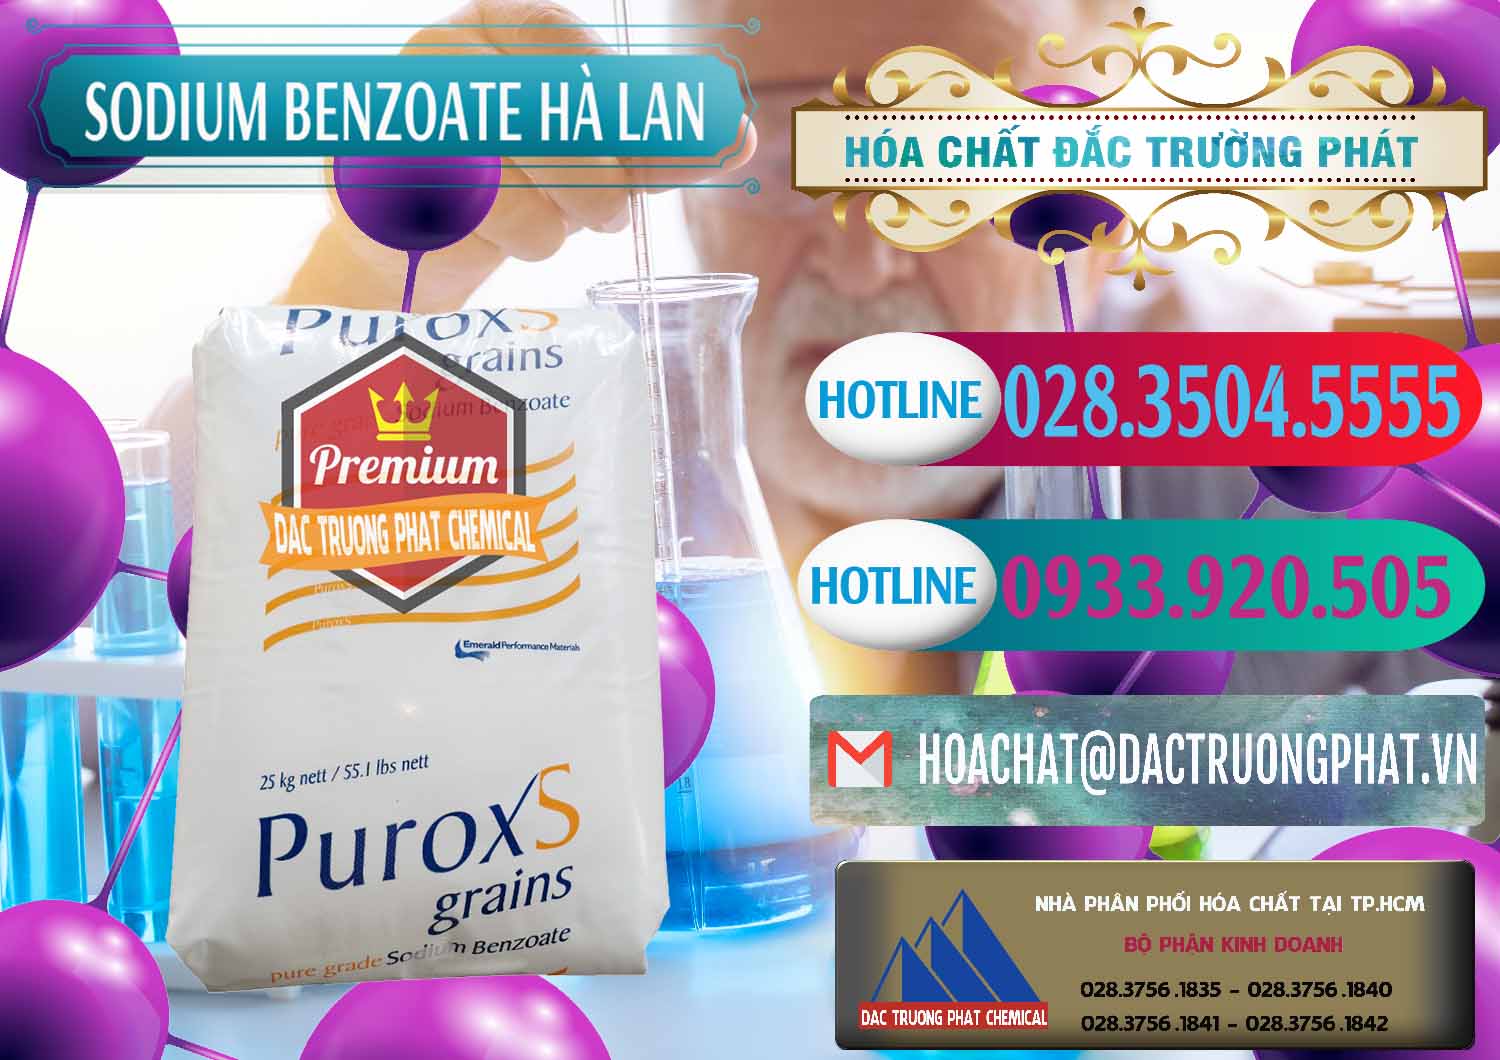 Nơi chuyên bán và cung ứng Sodium Benzoate - Mốc Bột Puroxs Hà Lan Netherlands - 0467 - Cty chuyên nhập khẩu ( phân phối ) hóa chất tại TP.HCM - truongphat.vn